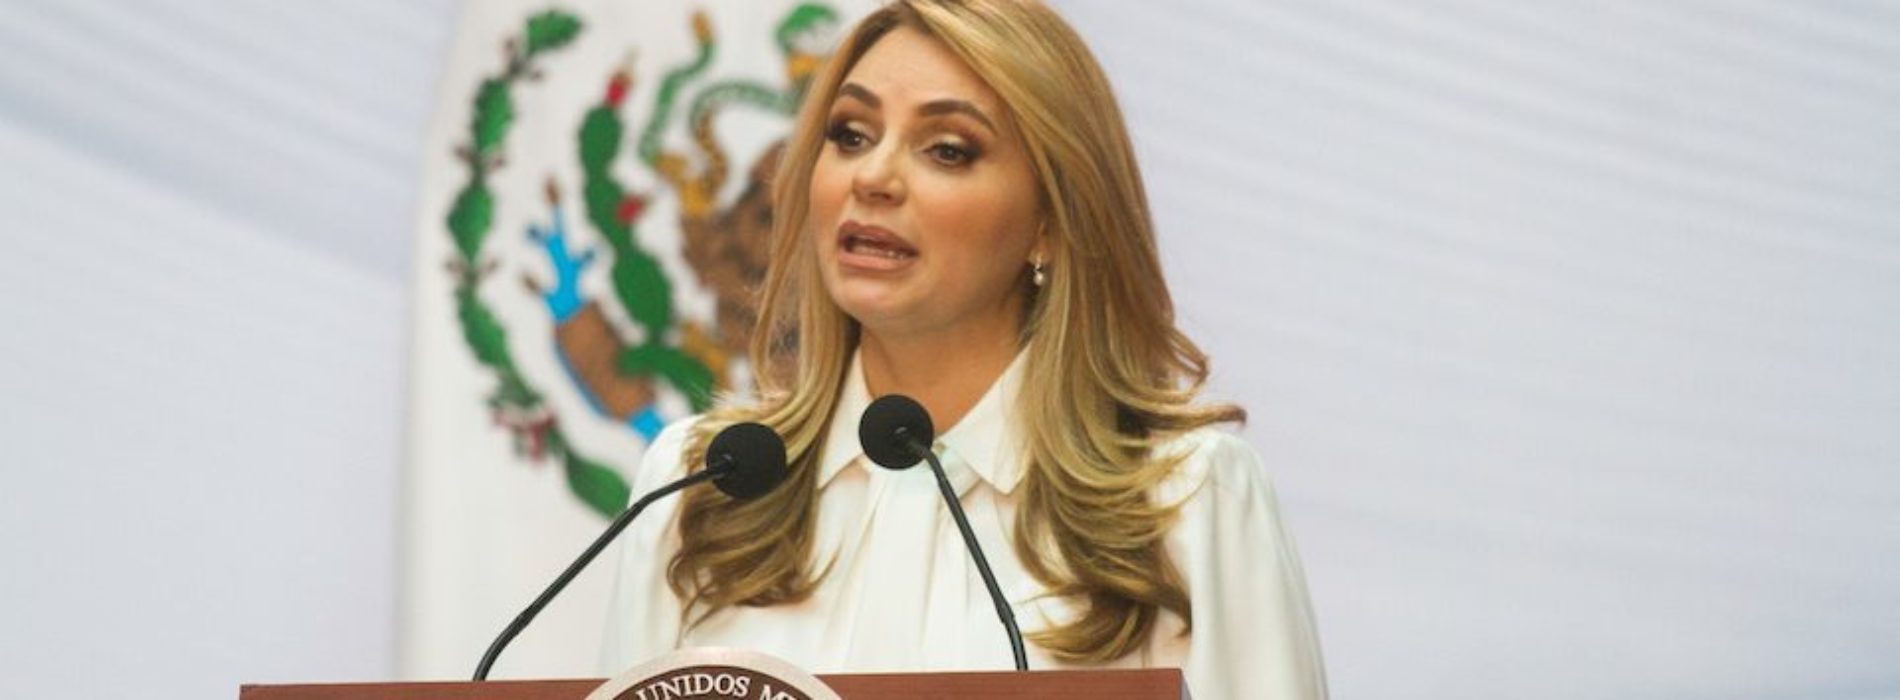 Verificado.mx: Forbes no publicó que Angélica Rivera es de
las mujeres más ricas del mundo